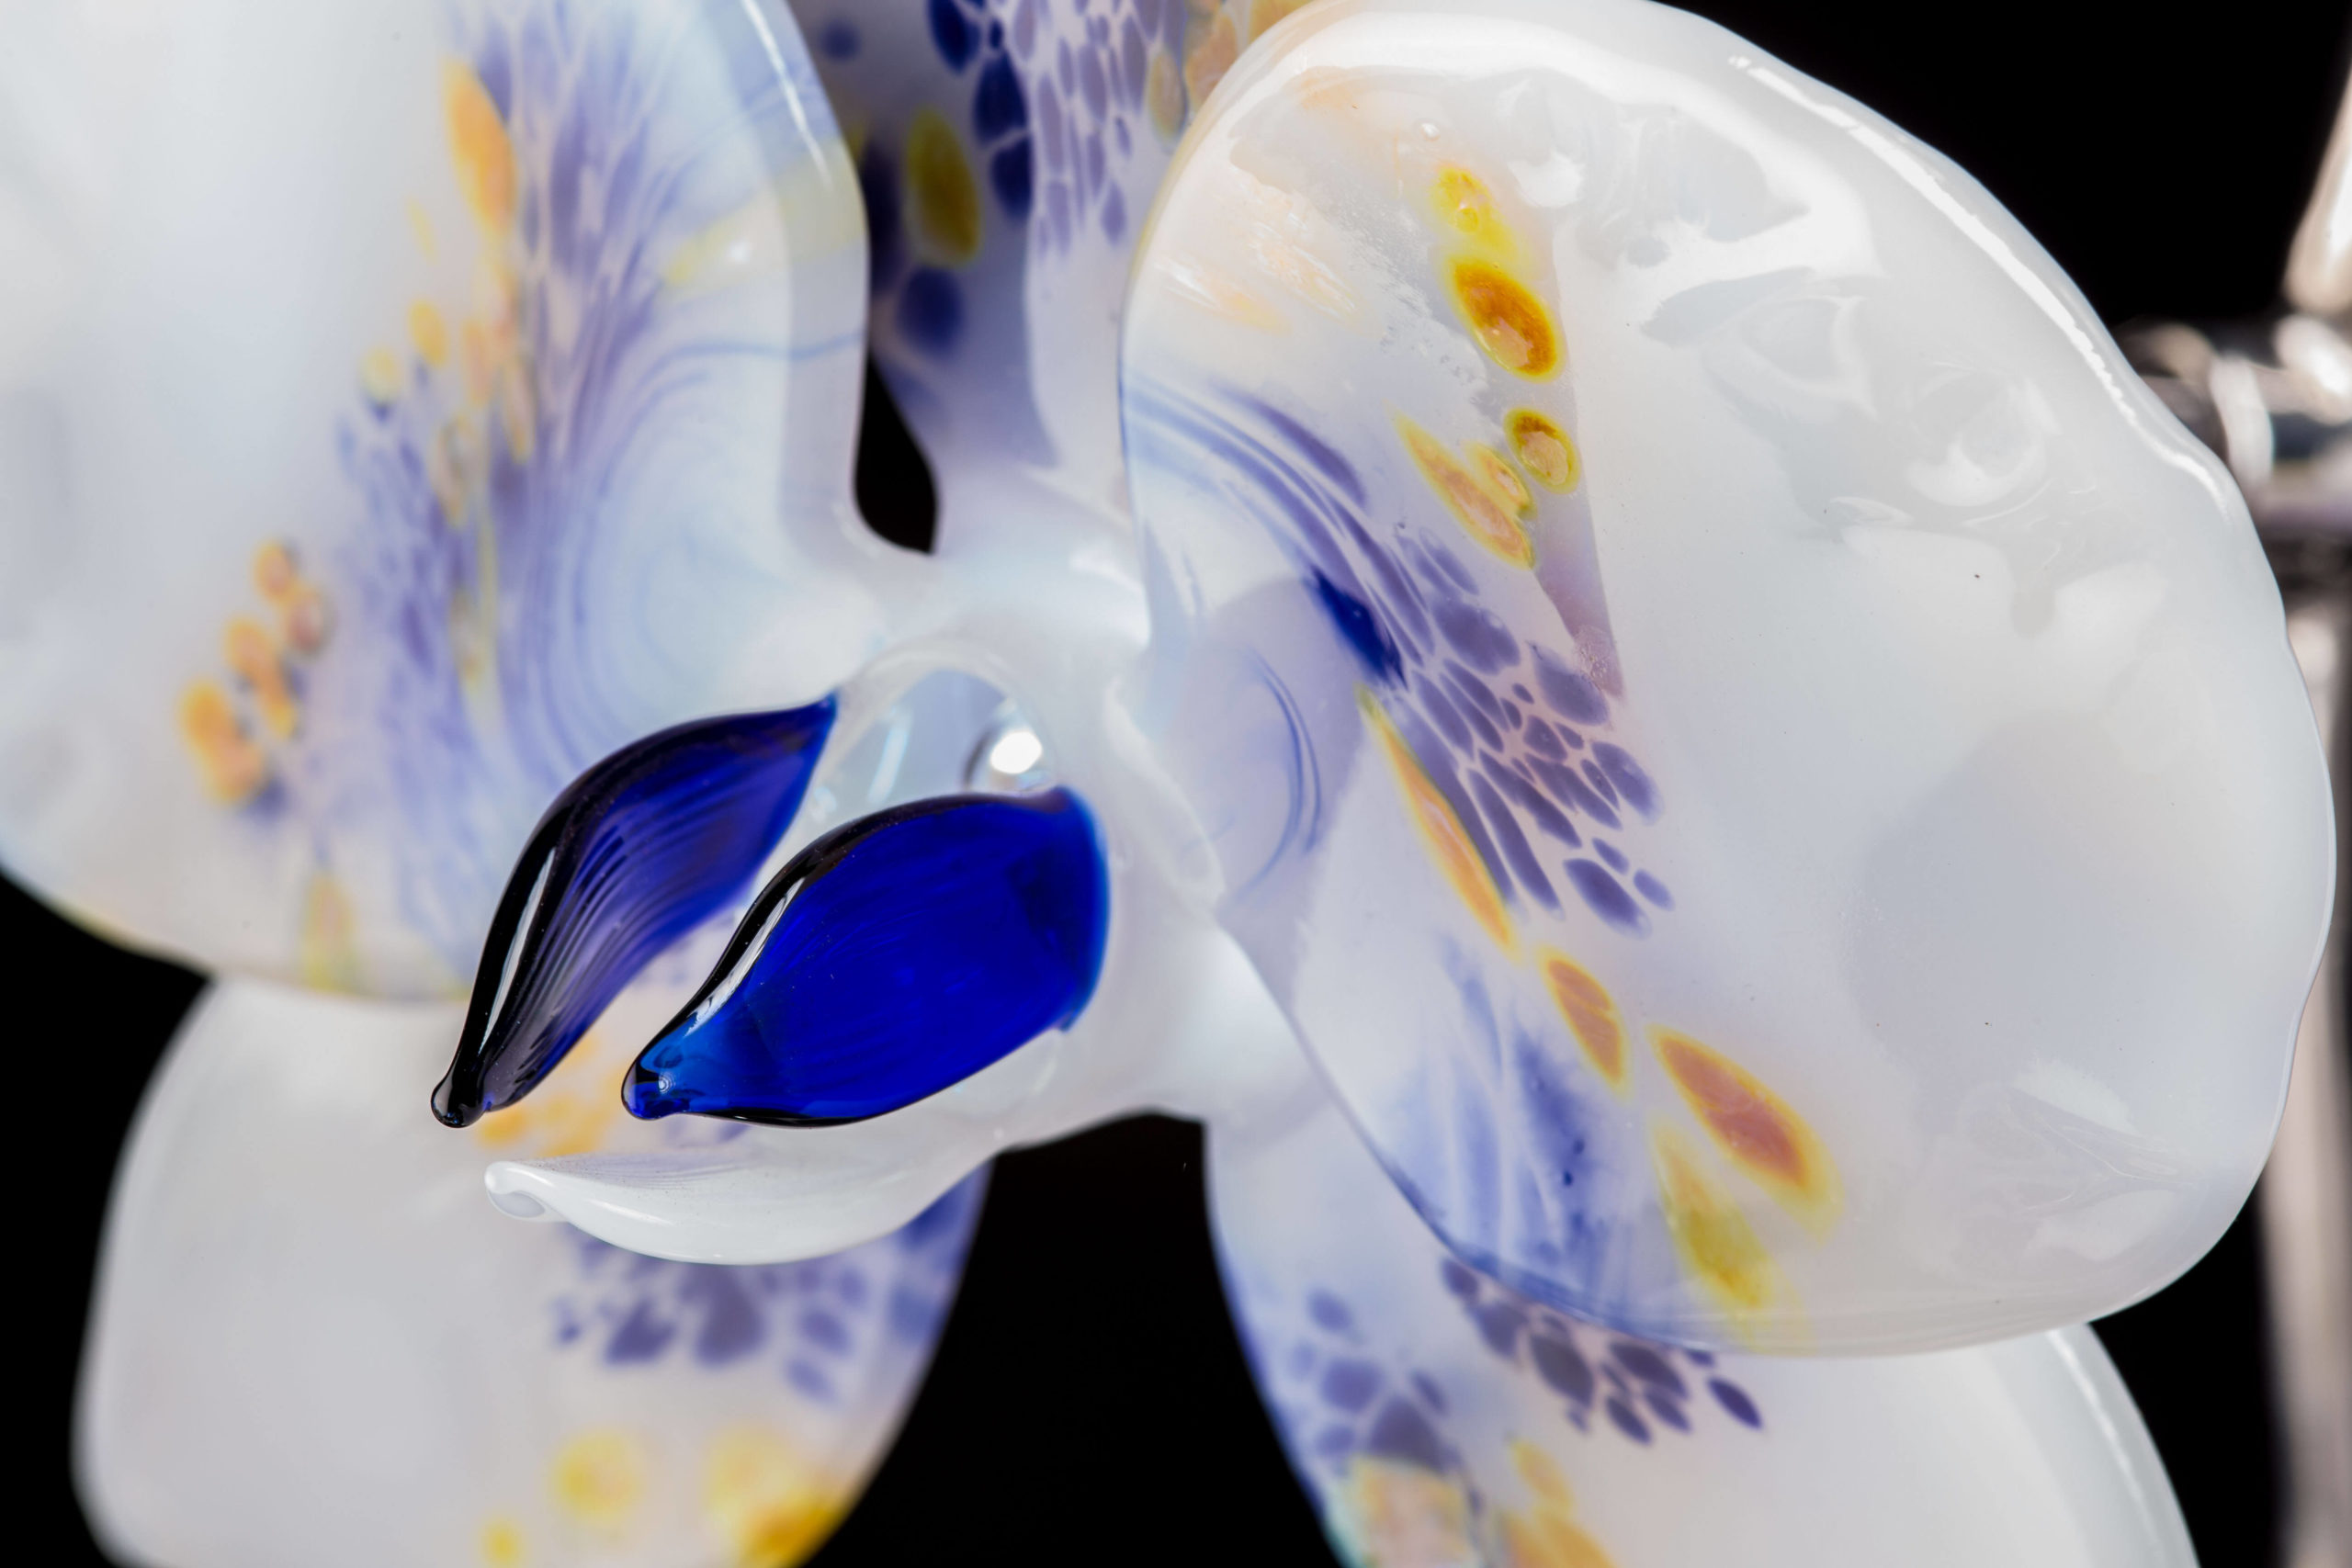 Orchidée de verre - Mad Verrerie D'Art | Frédéric Demoisson